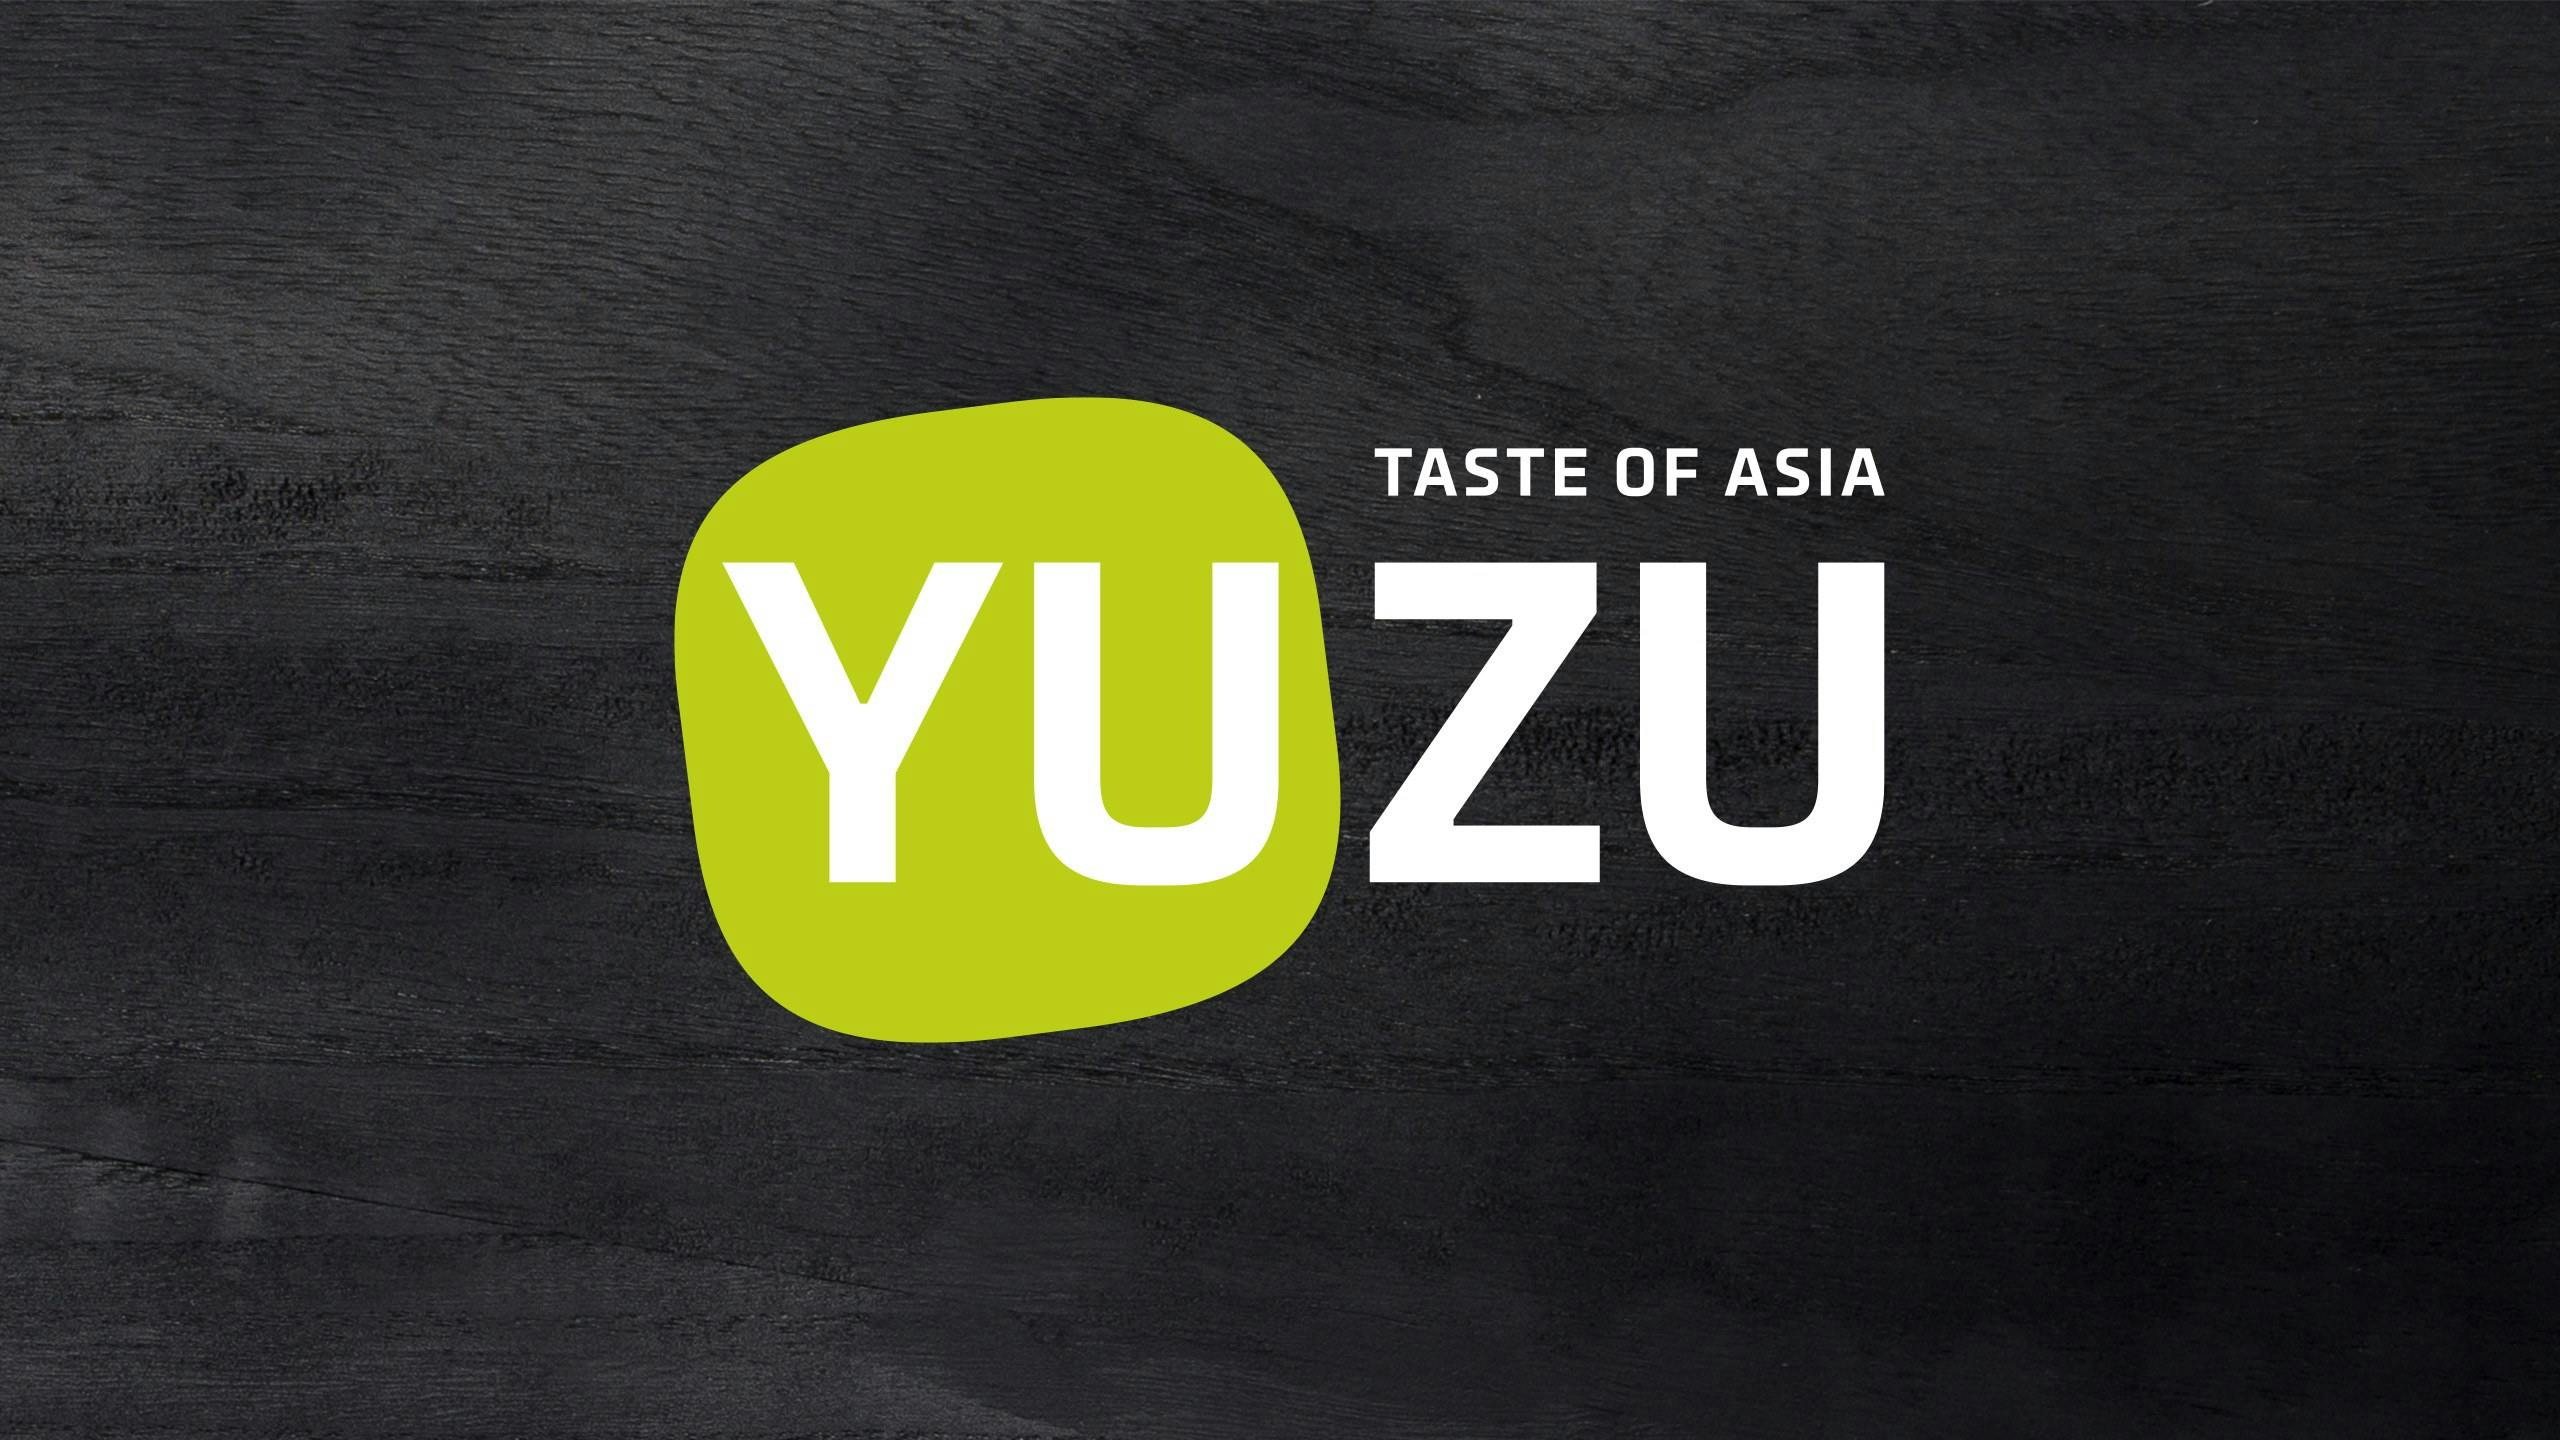 Yuzu logo